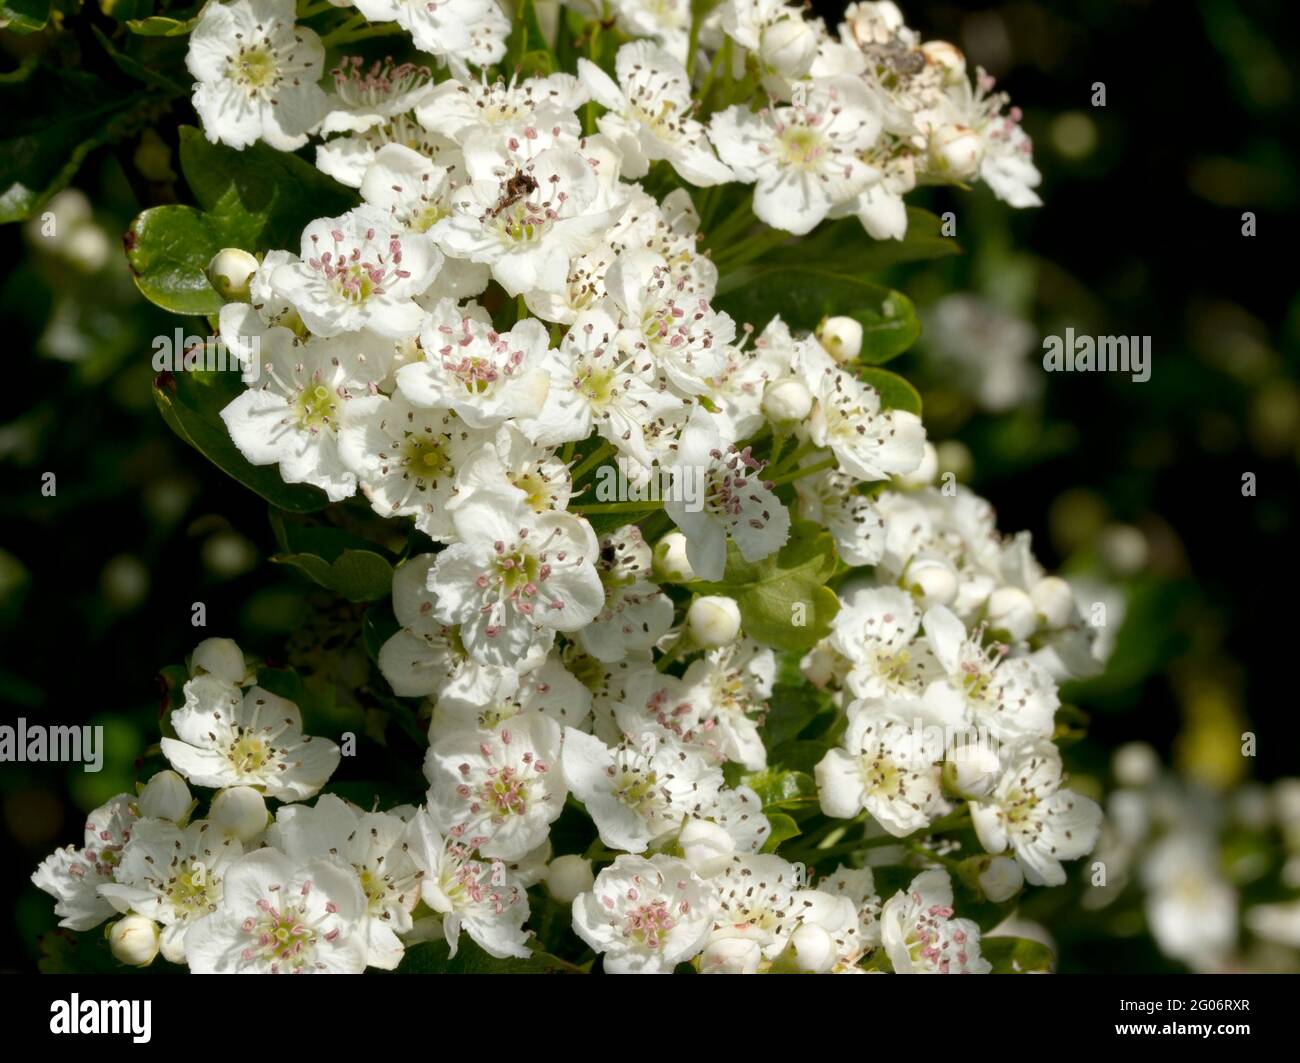 Der Weißdorn blüht im späten Frühjahr, was ihm den gemeinsamen Namen Mayflower gibt. Bäume, die im offenen Sonnenschein wachsen, haben reichlich blühende Pflanzen. Stockfoto